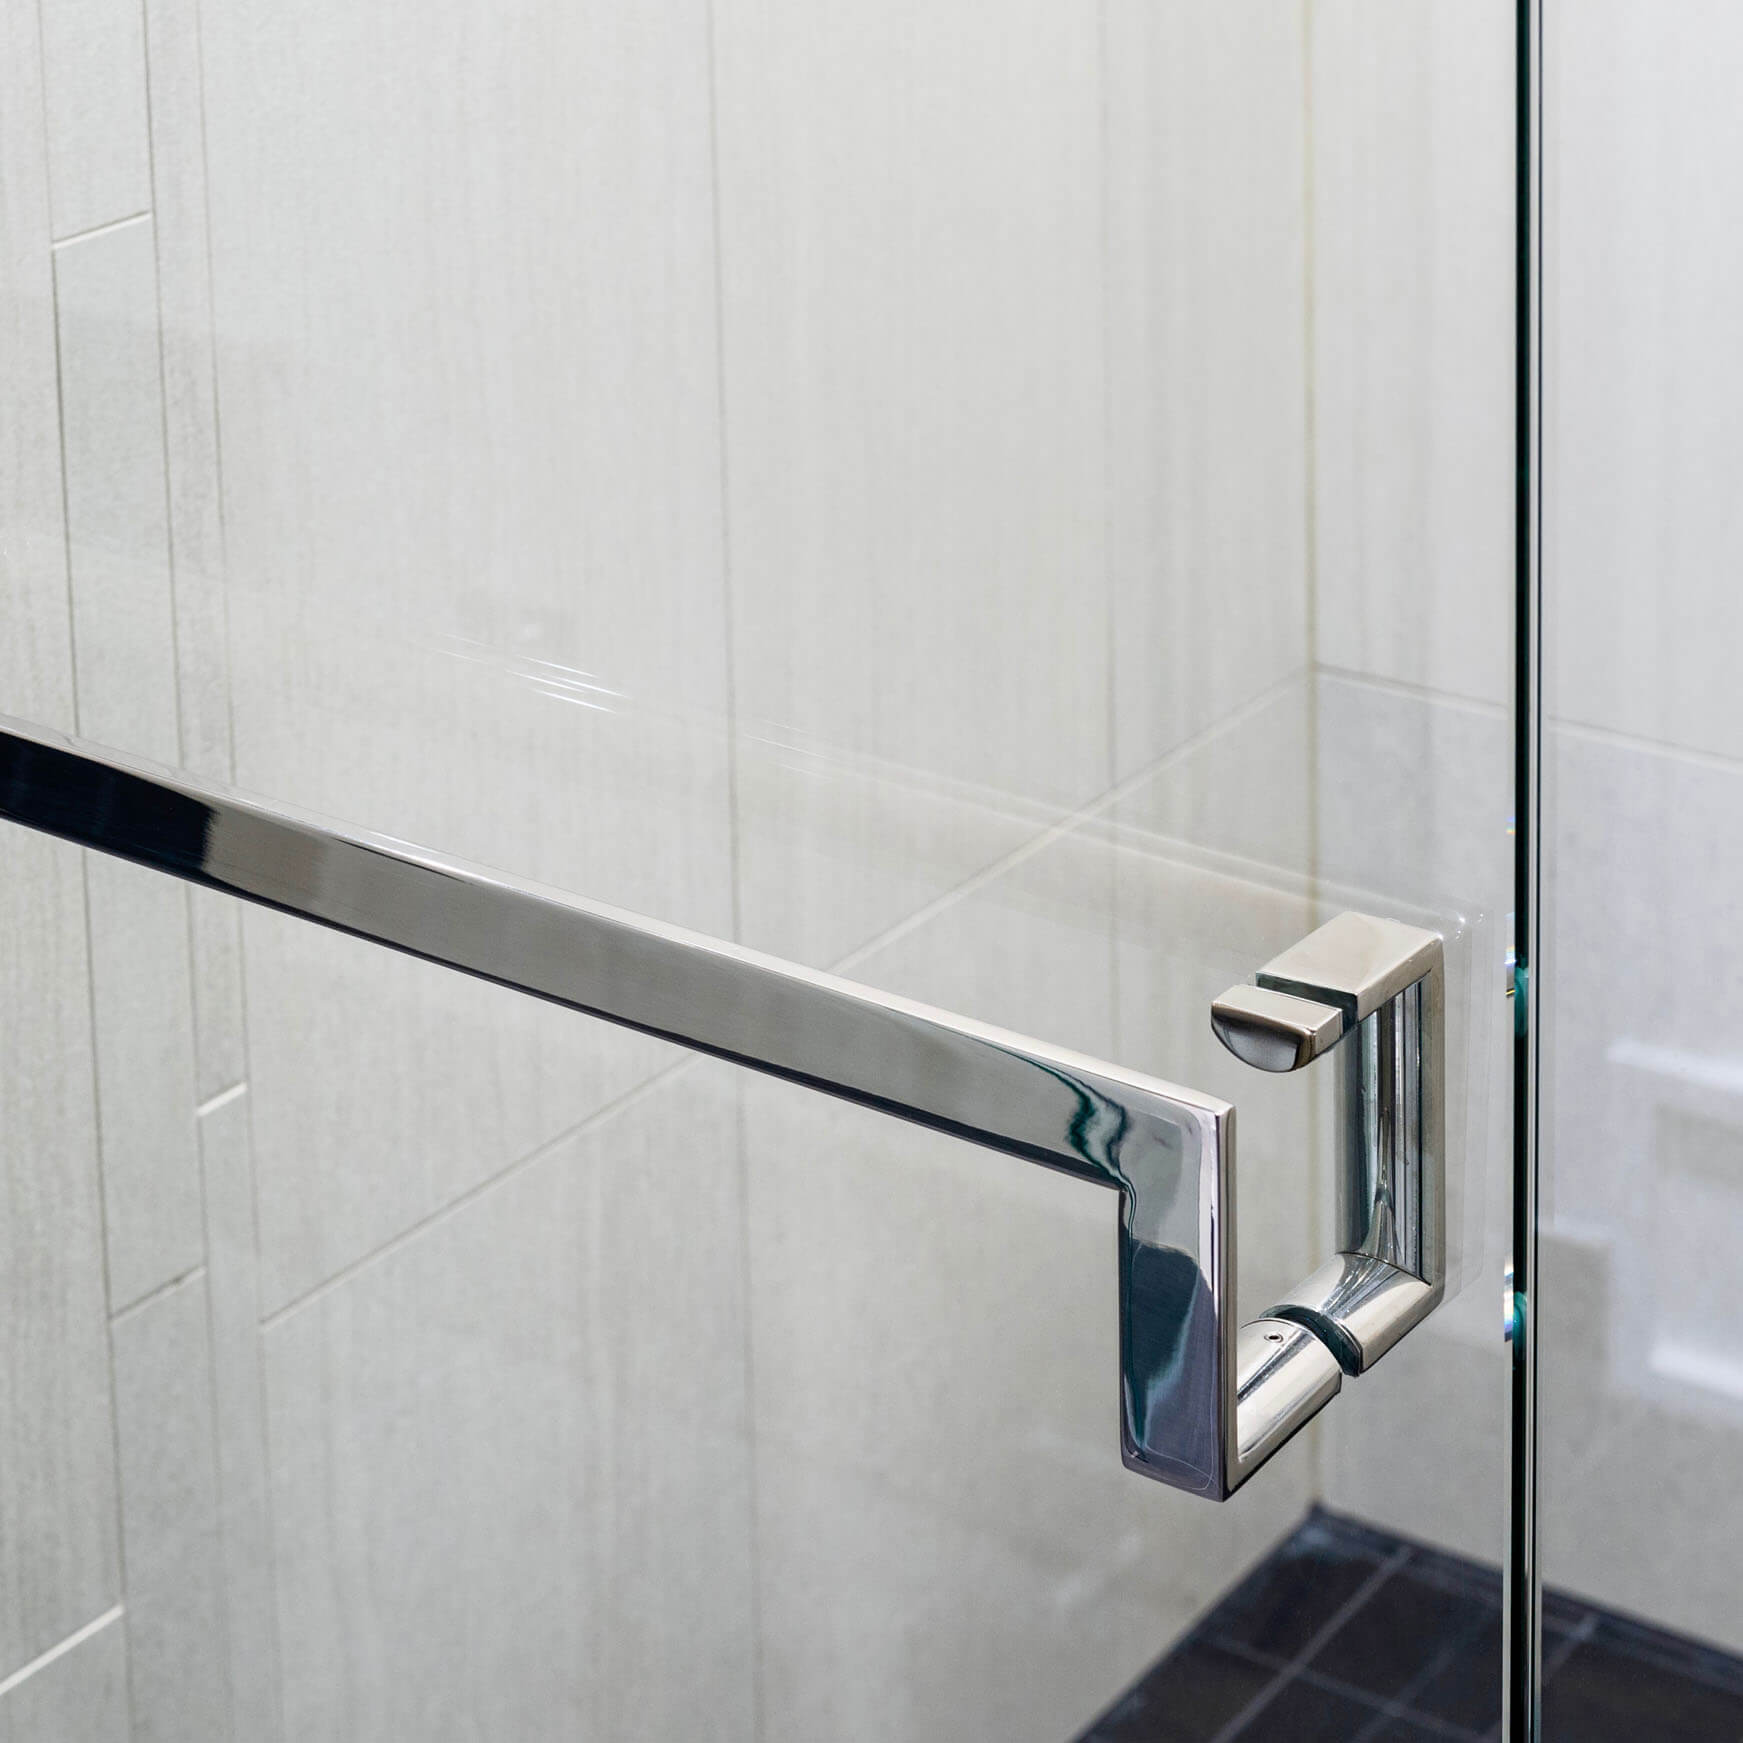 Glass Door Handles: Handle + Towel Bar - Type 4 - JWL Home